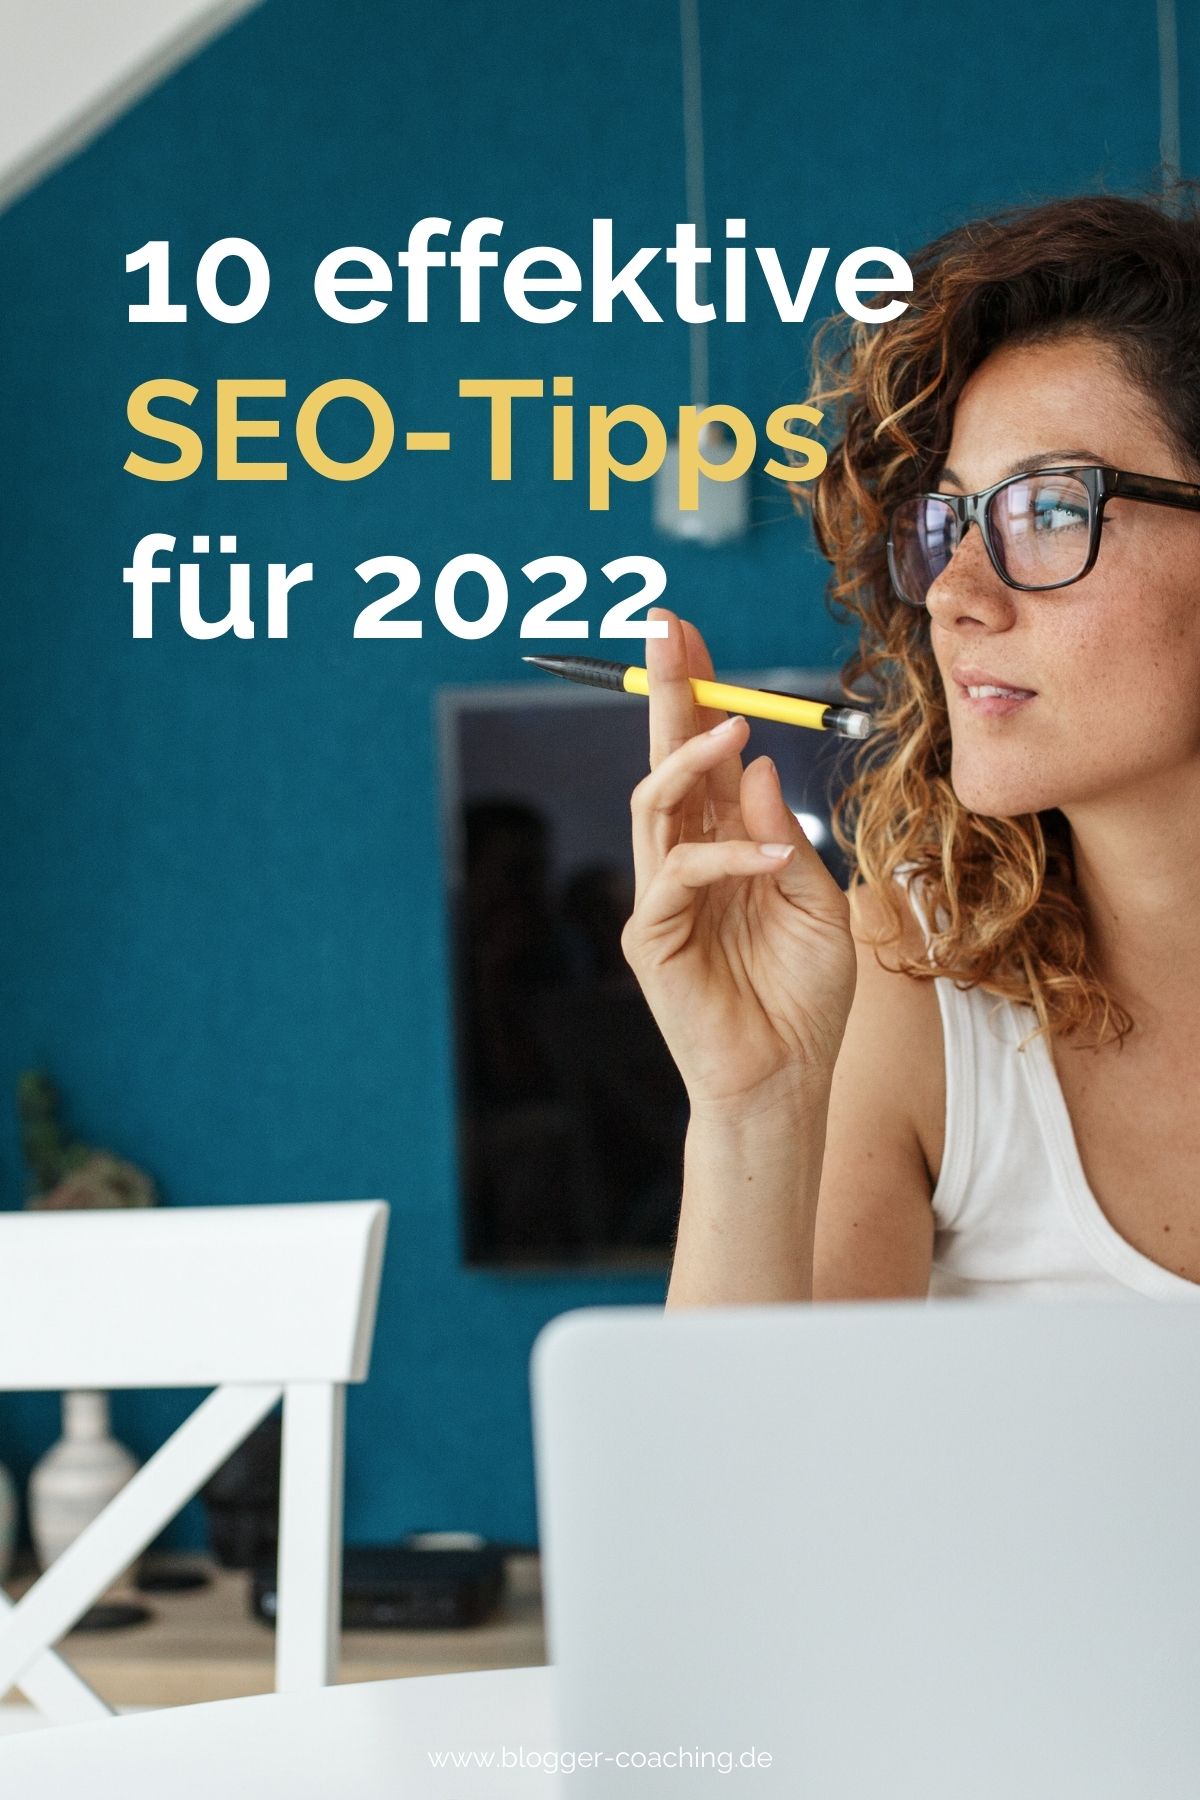 Blog SEO optimieren: 10 effektive SEO-Tipps für 2022, die dein Google-Ranking (wirklich!) verbessern